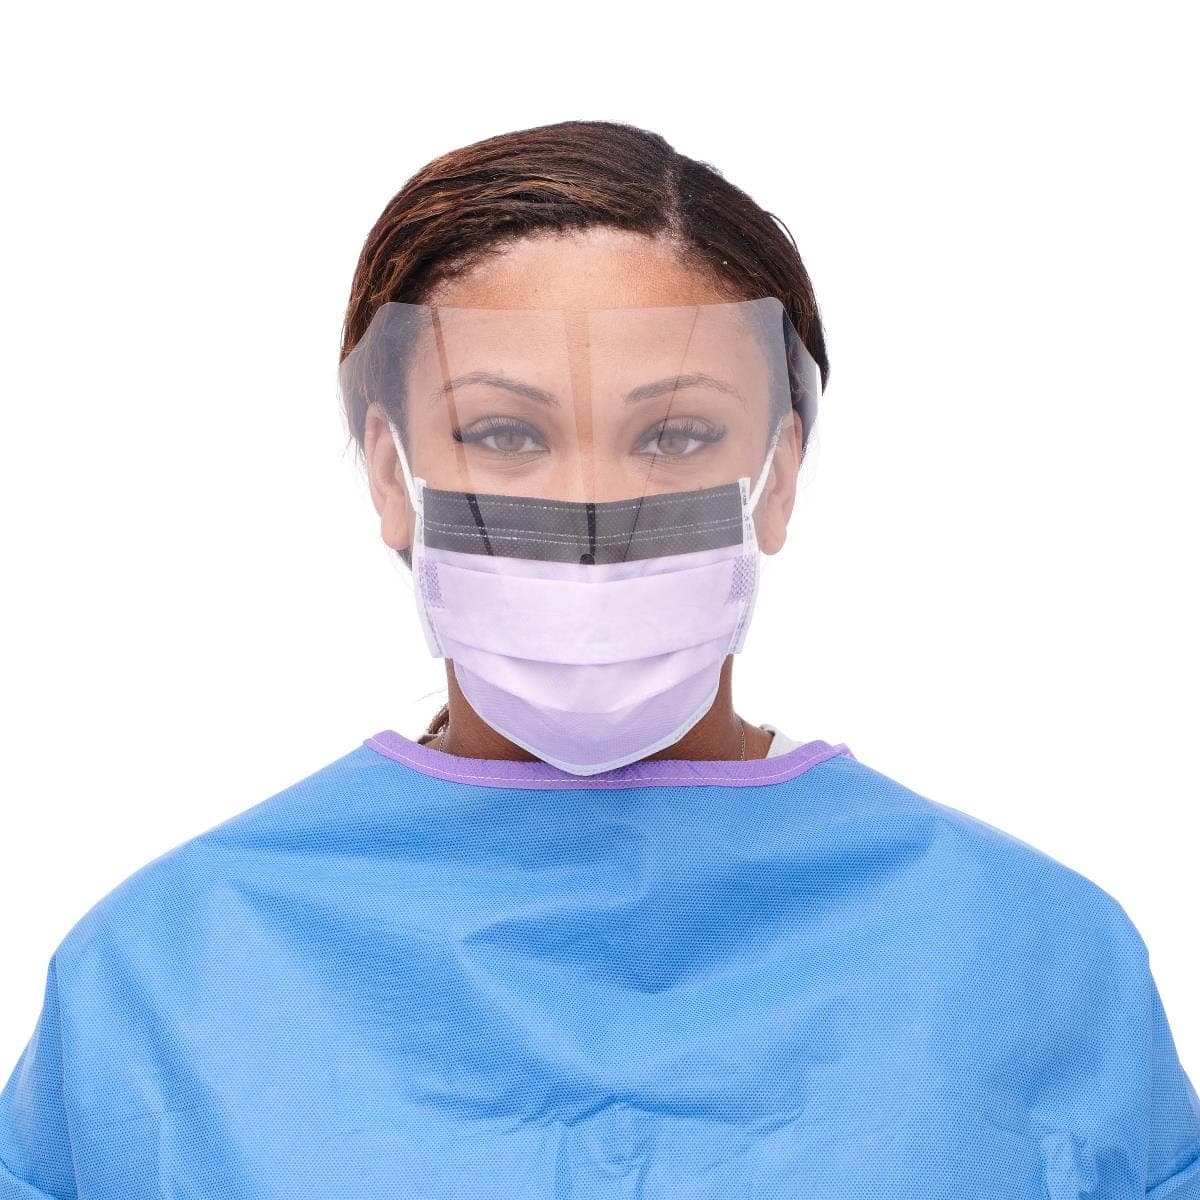 Medline Medline ASTM Level 3 Procedure Face Masks with Eye Shield and Ear Loops NON27410EL